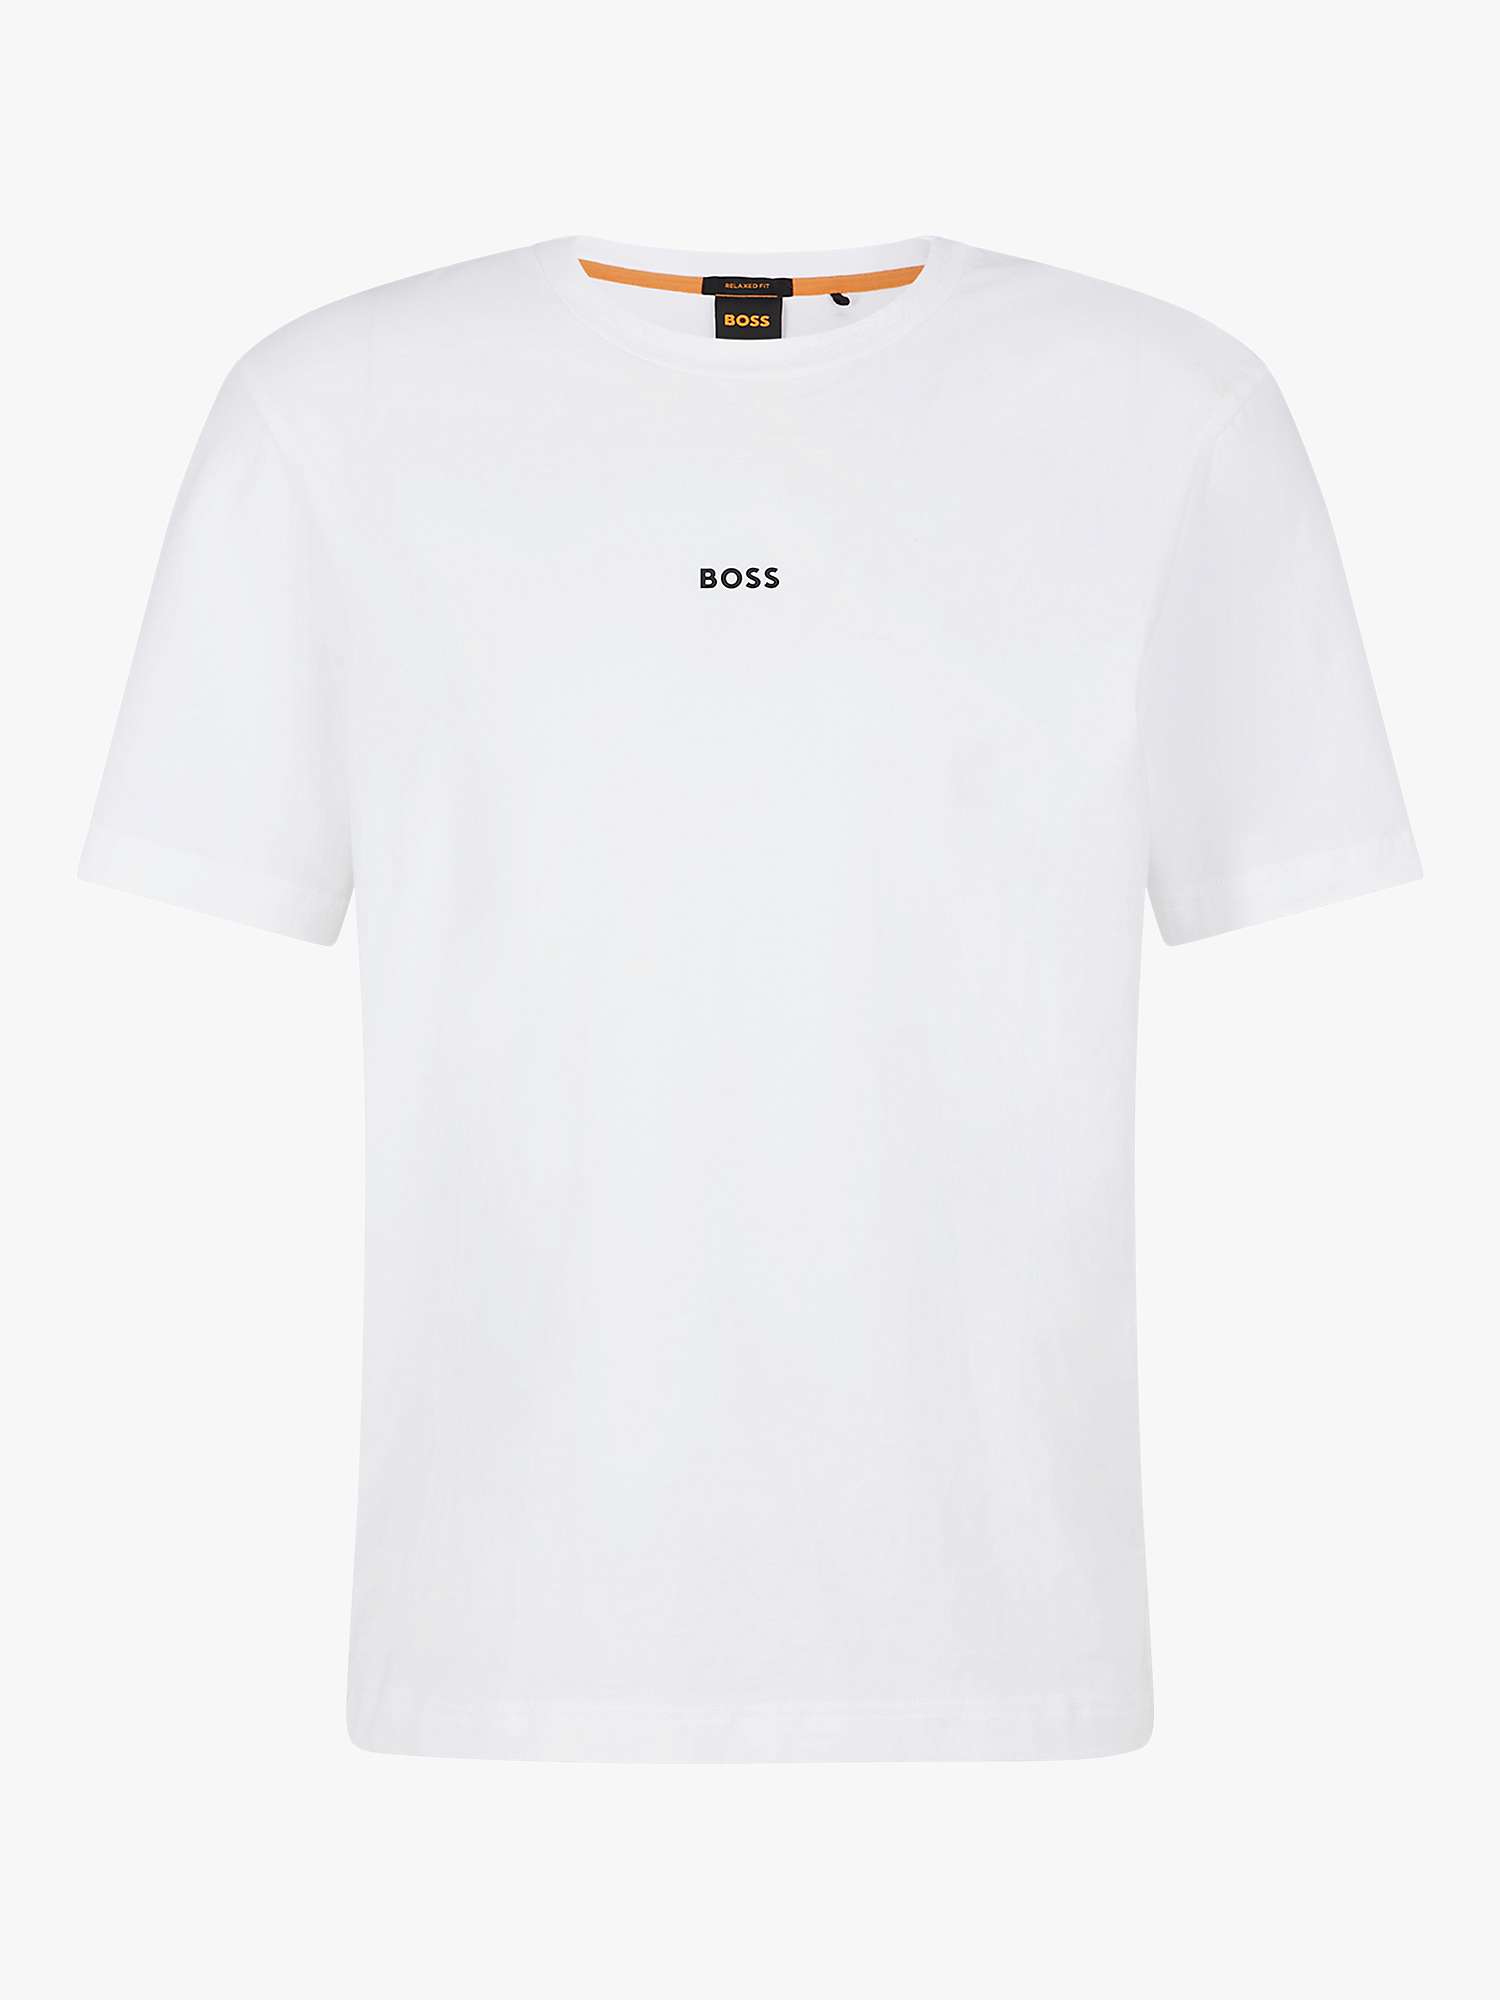 BOSS TChup Logo T-Shirt, White at John Lewis & Partners